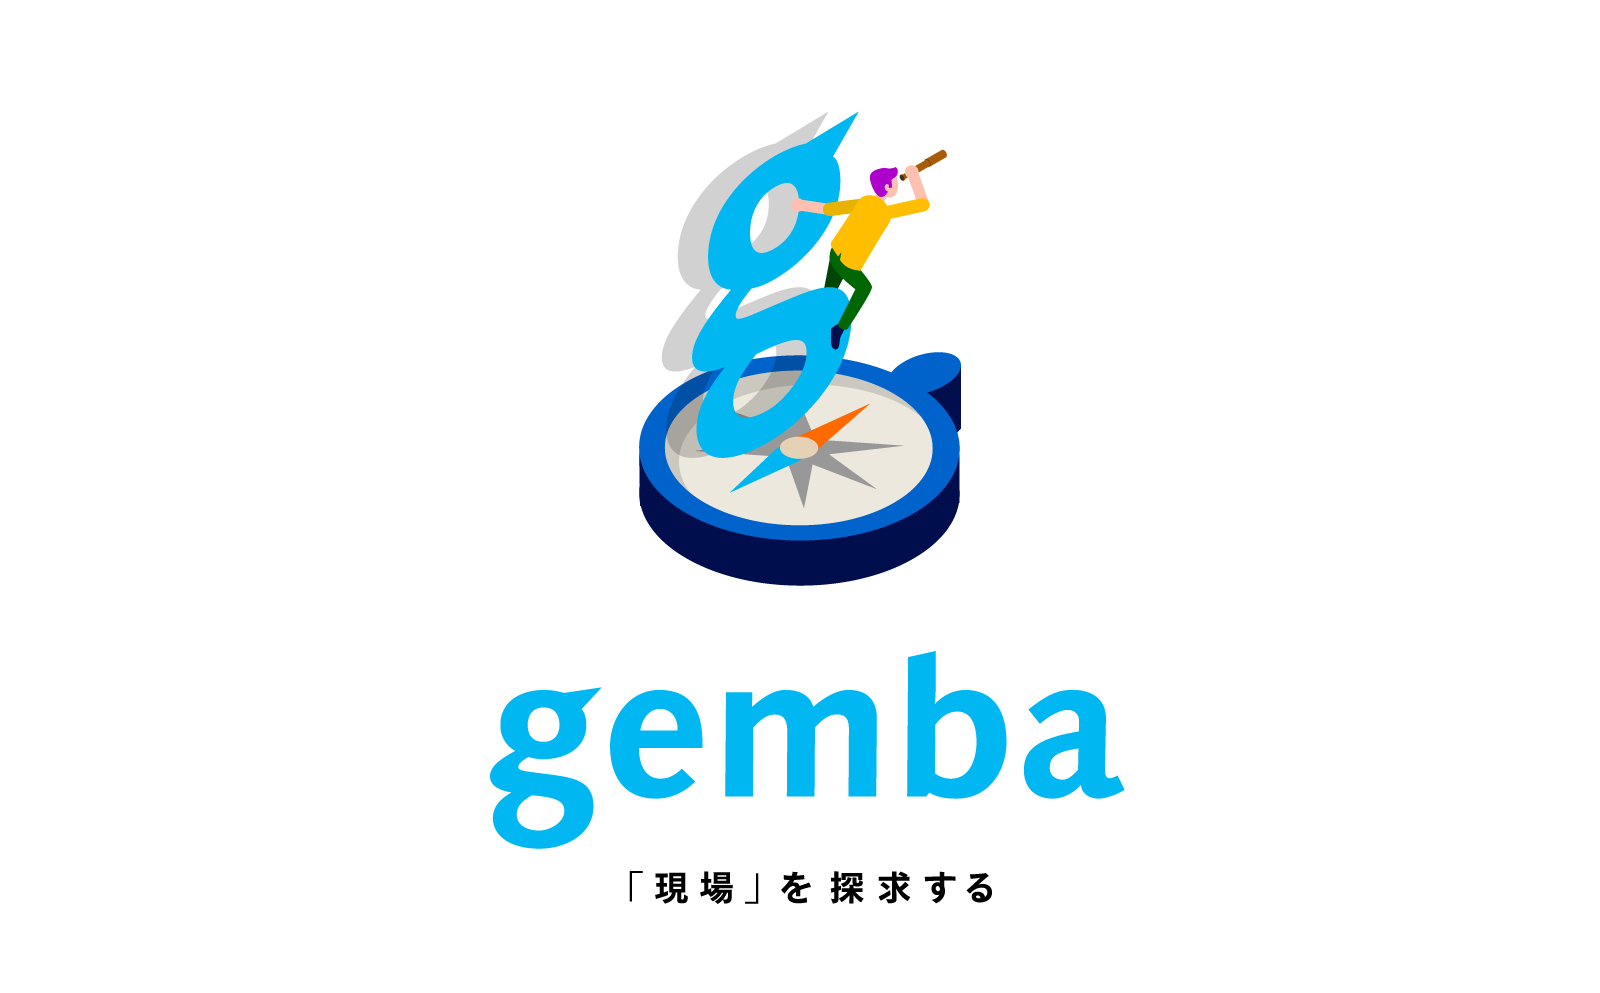 公式オウンドメディア「gemba」